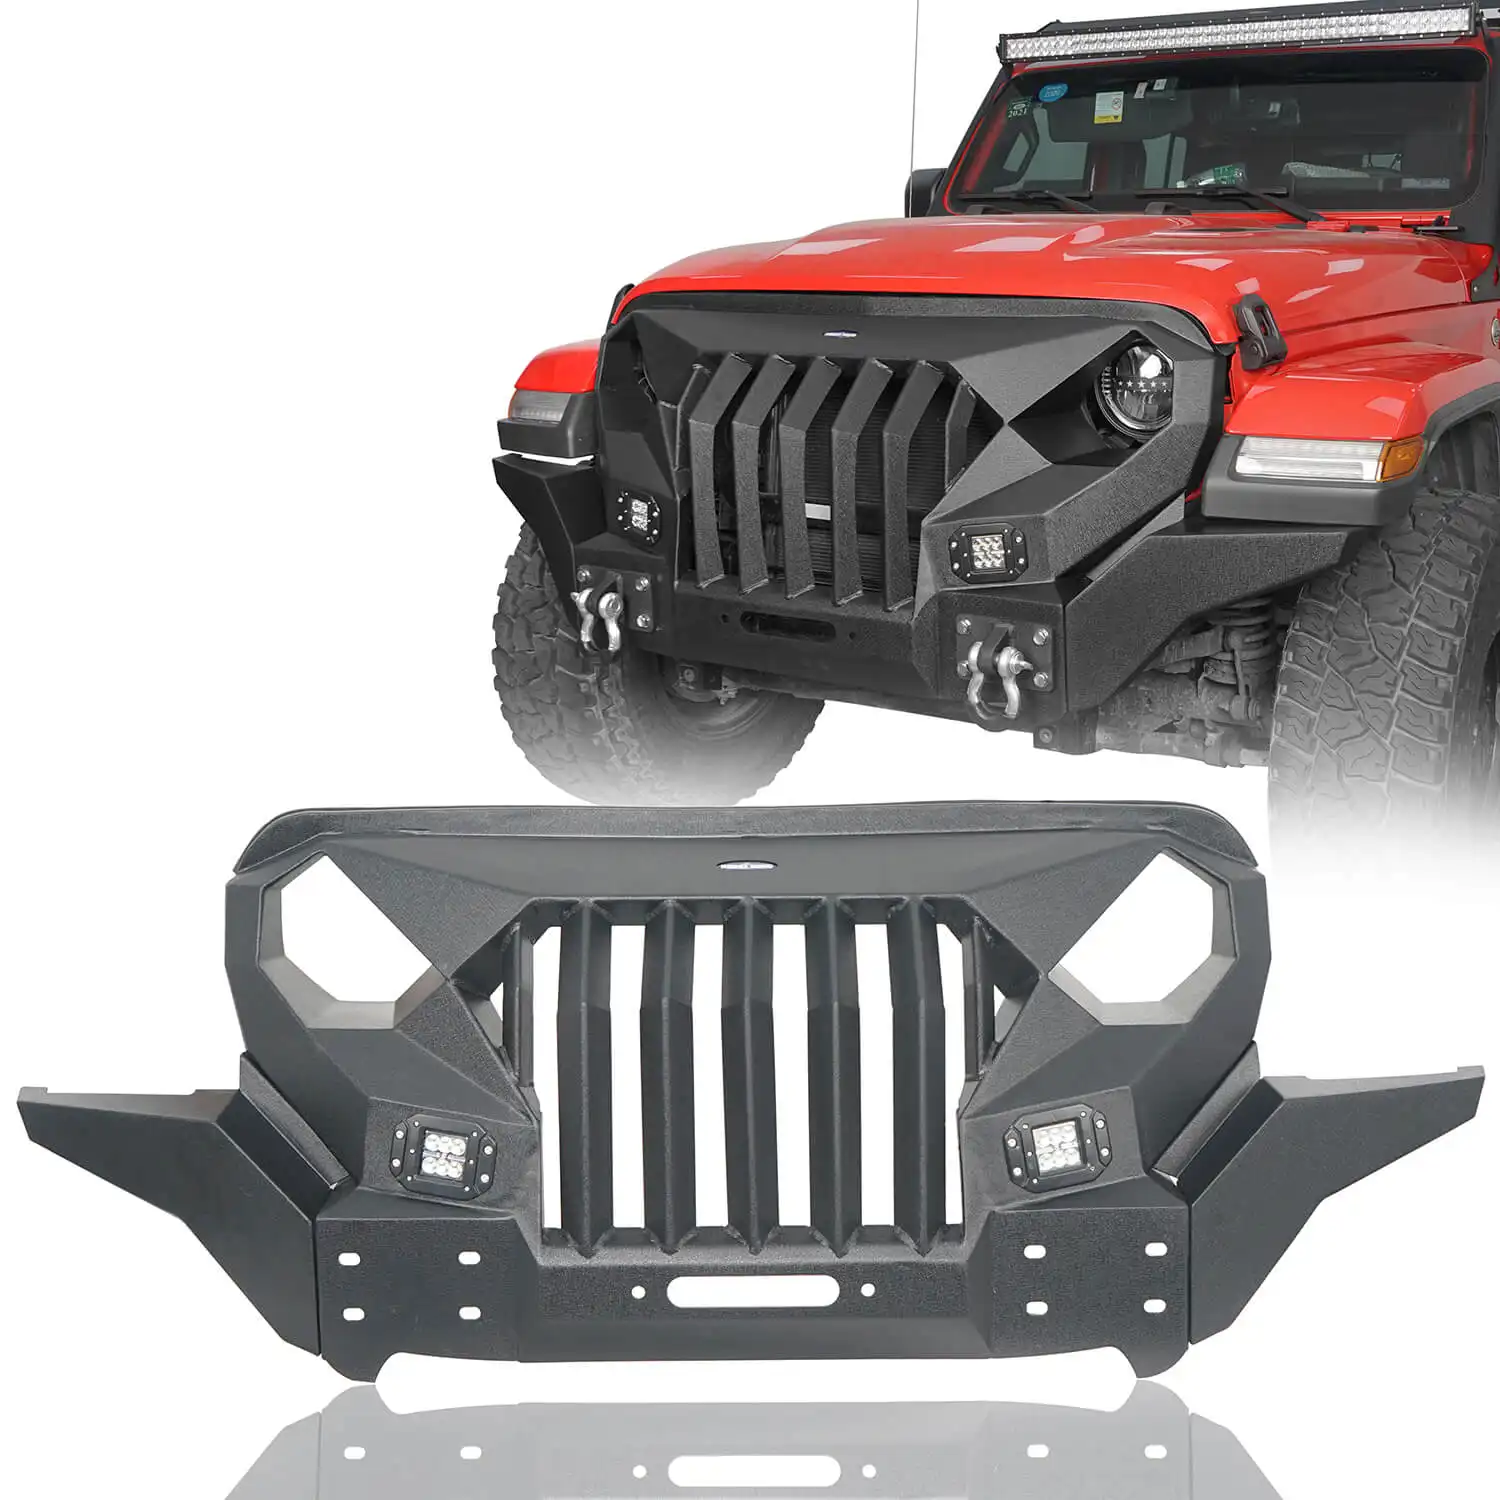 PLUSBEAM di alta qualità A-rmor n. 4 paraurti anteriore protezione protettiva per auto per Jeep wrangler JK 4x4 accessori decorativi